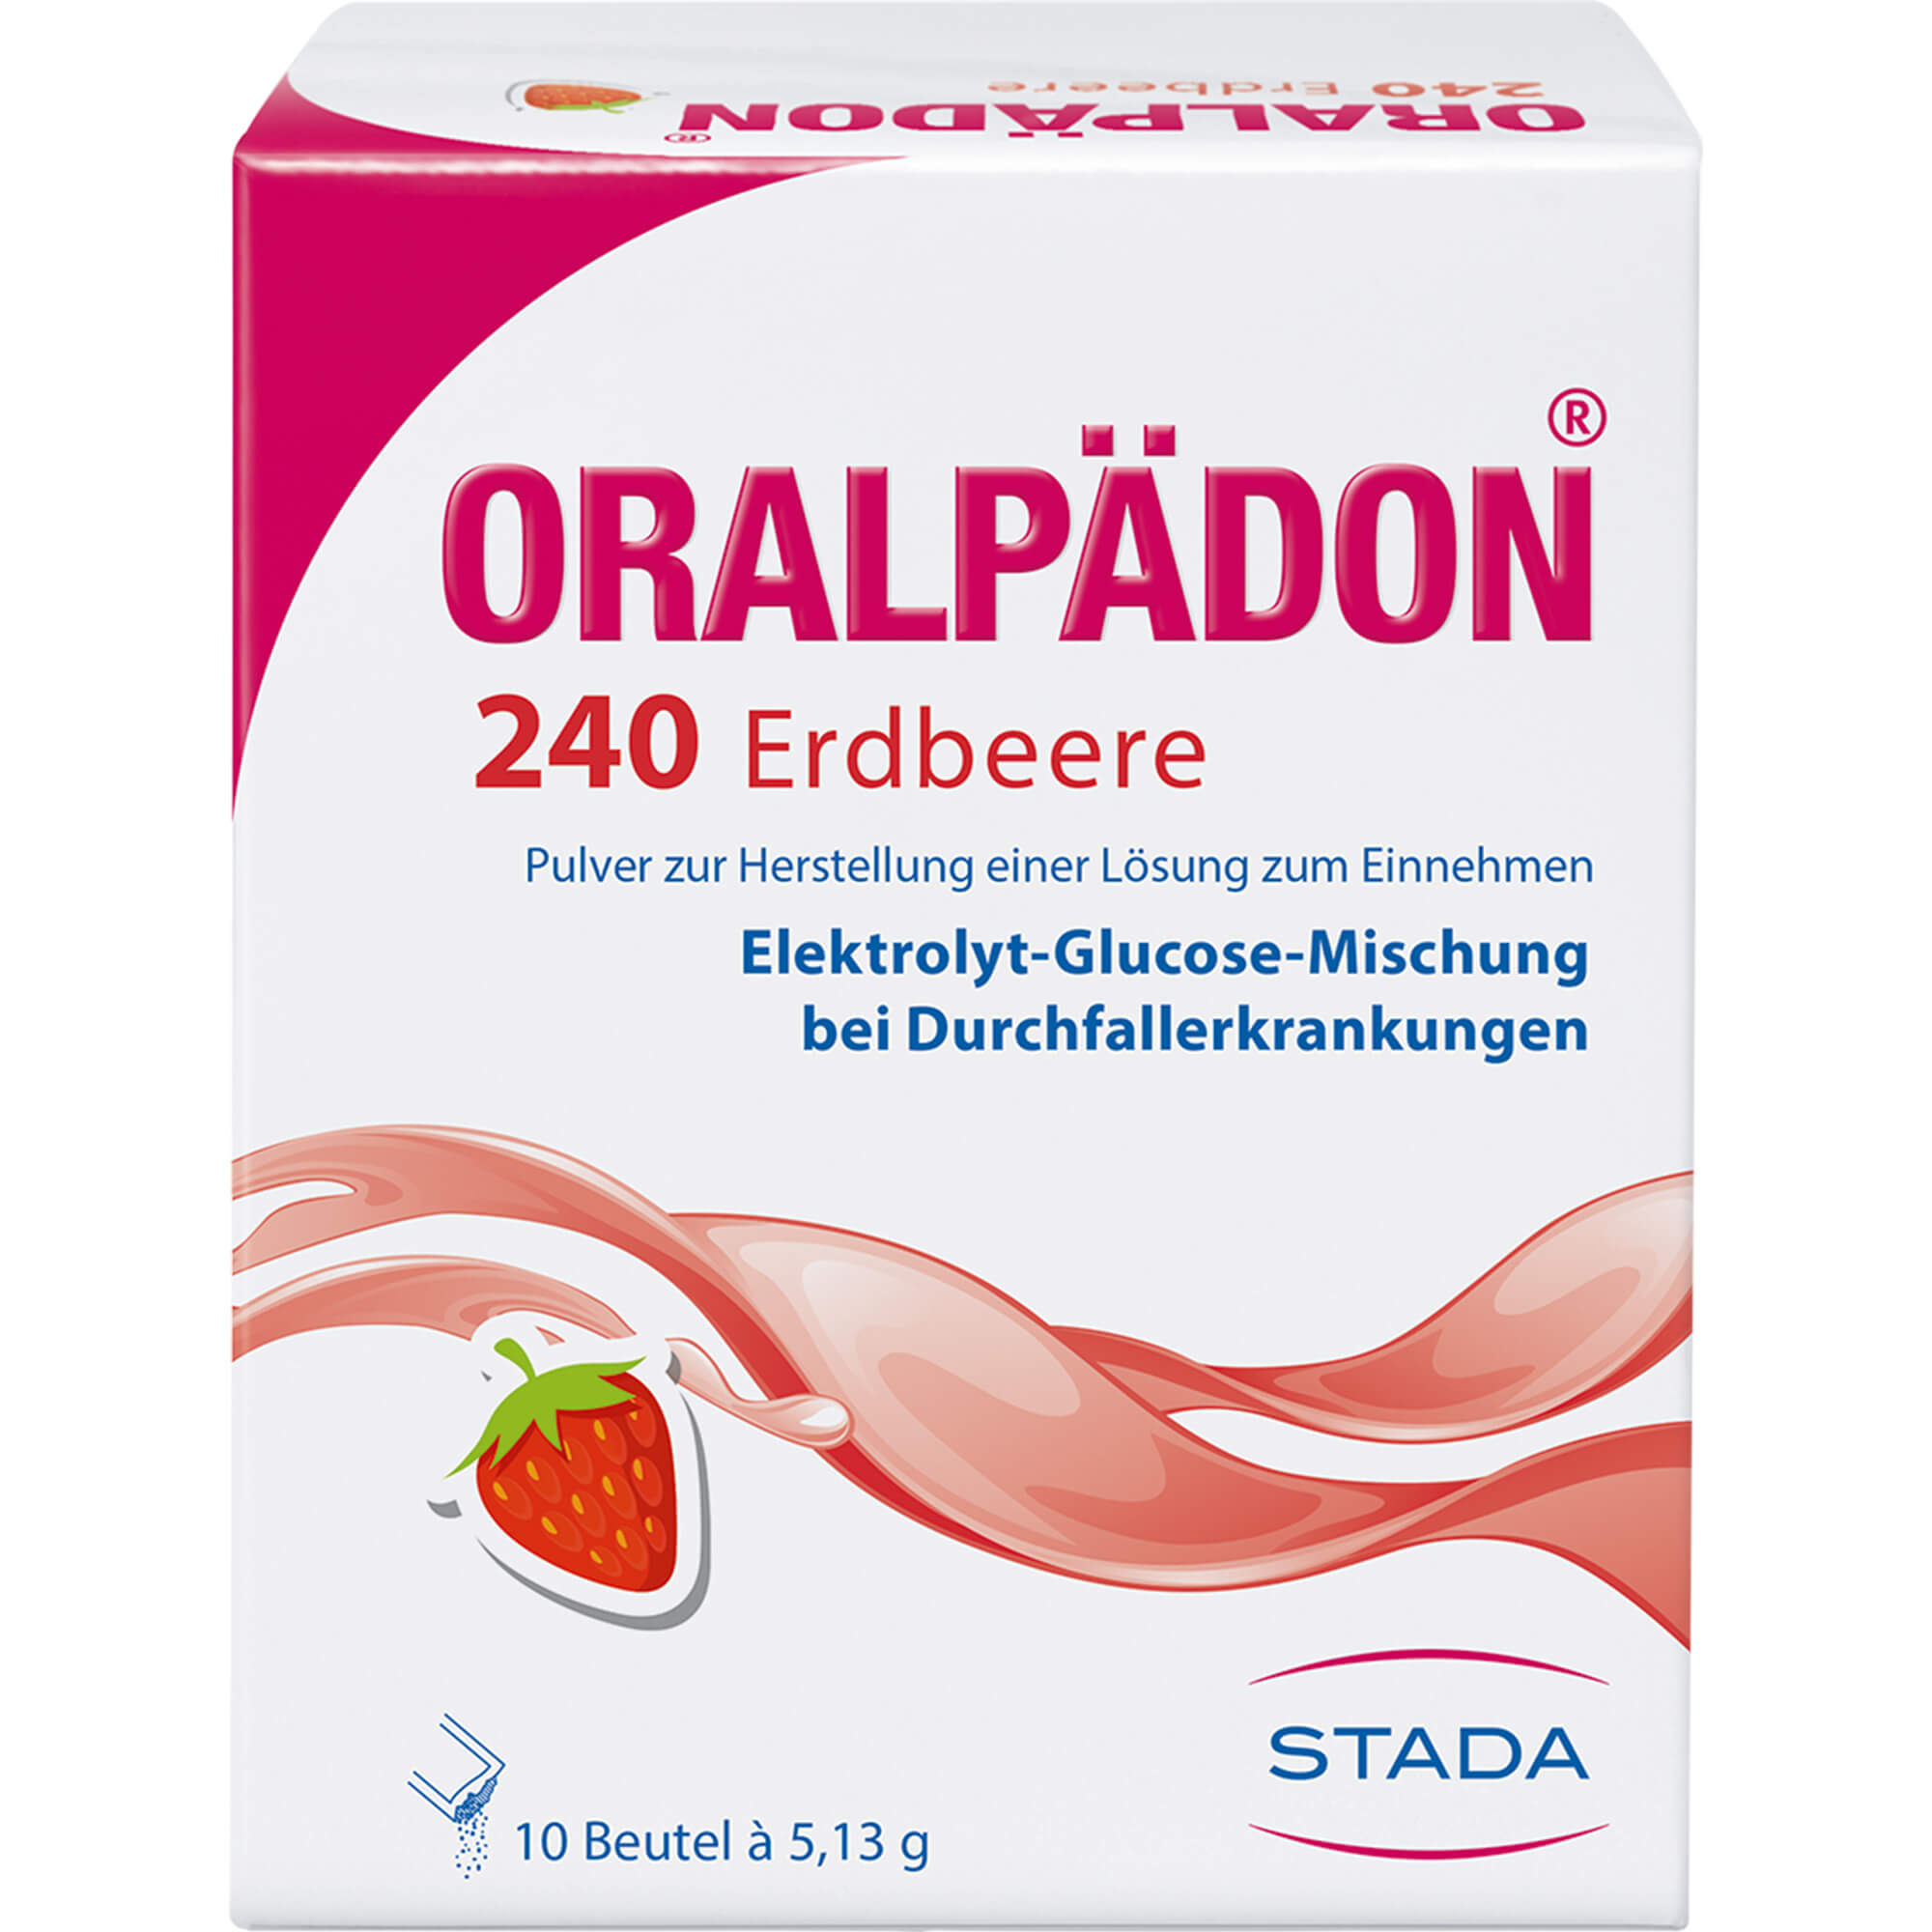 ORALPAeDON-240-Erdbeere-Btl-Pulver